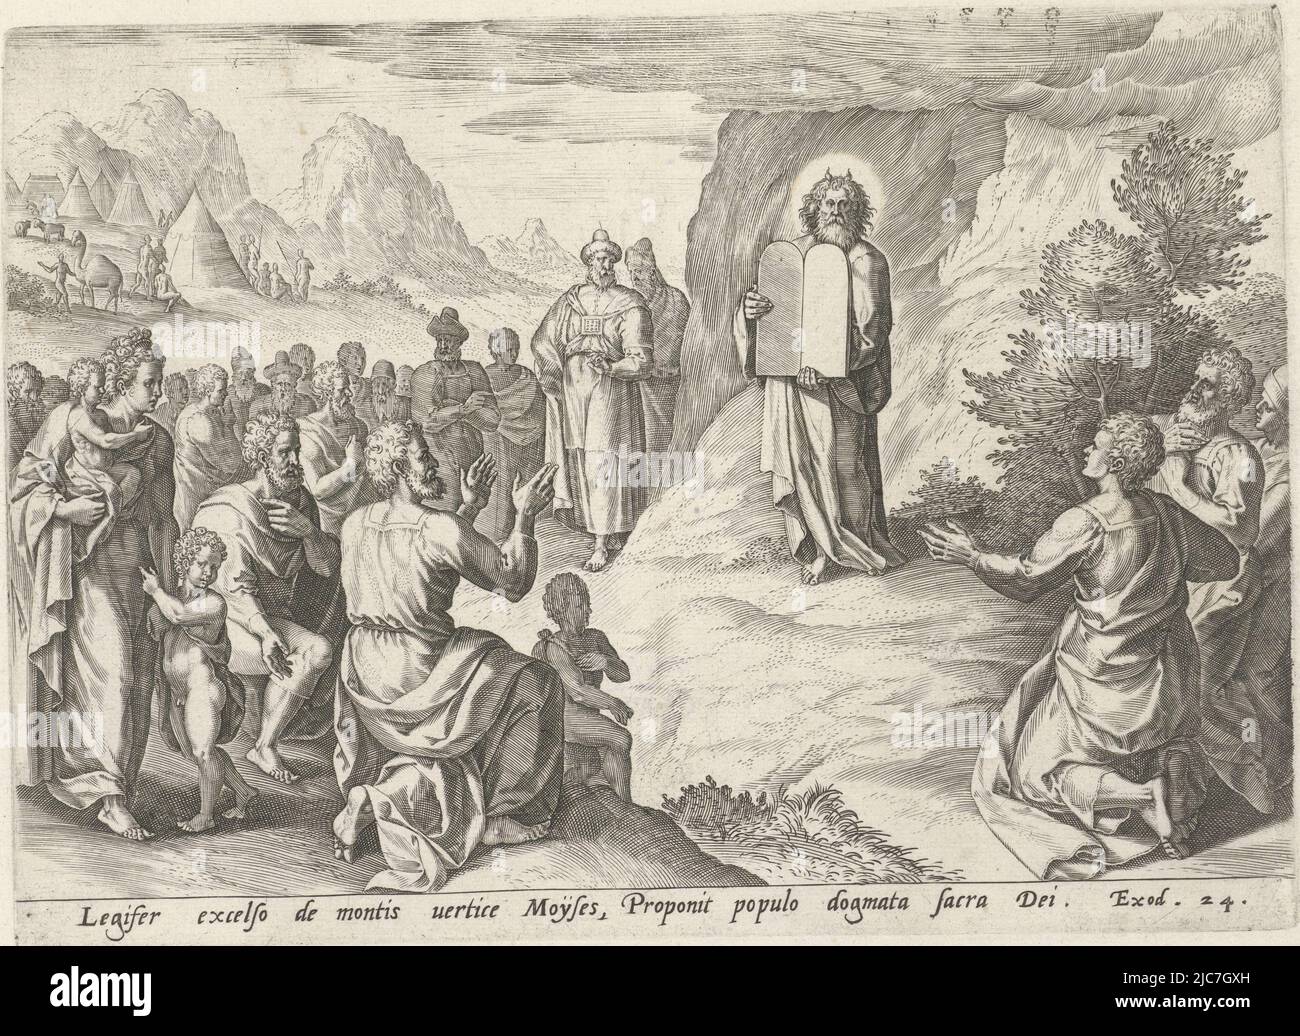 Moïse montre les tablettes de pierre de la Loi au peuple juif. Autour de sa tête des faisceaux de lumière. Le peuple s'agenouille devant Moïse. L'imprimé a une légende latine et est le quatrième imprimé d'une série en six parties sur l'histoire de Moïse et du peuple juif dans le désert après l'Exode. Moïse avec les tablettes de la loi Histoire de Moïse après l'Exode , imprimerie: Johann Sadeler (I), Crispijn van den Broeck, éditeur: Gerard de Jode, Anvers, 1579, papier, gravure, h 190 mm × l 264 mm Banque D'Images